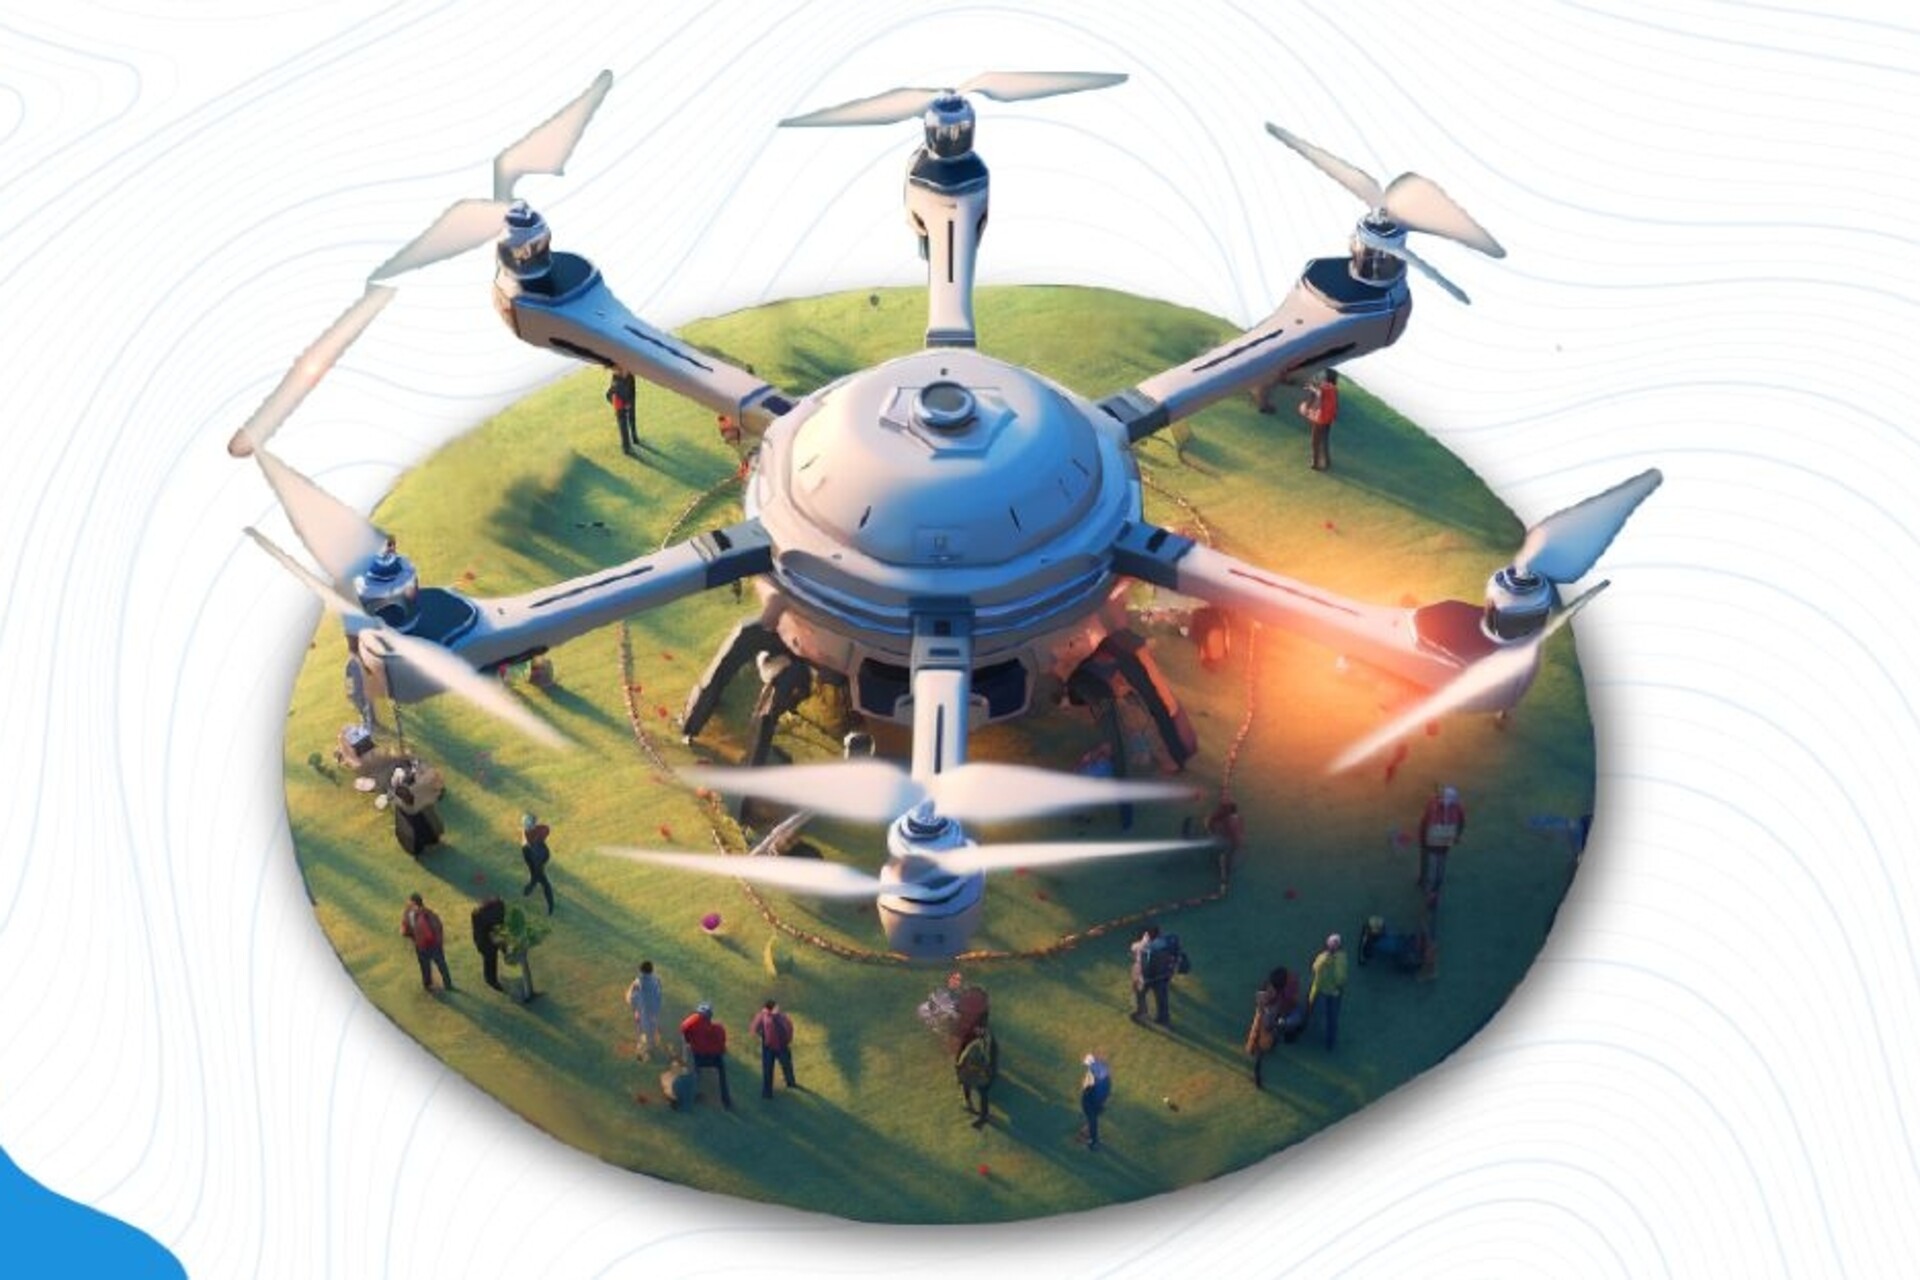 Dronët: AEREO me bazë në Bangalore, më parë Aarav Un Manned Systems, ka transformuar ekosistemin e dronëve të Indisë